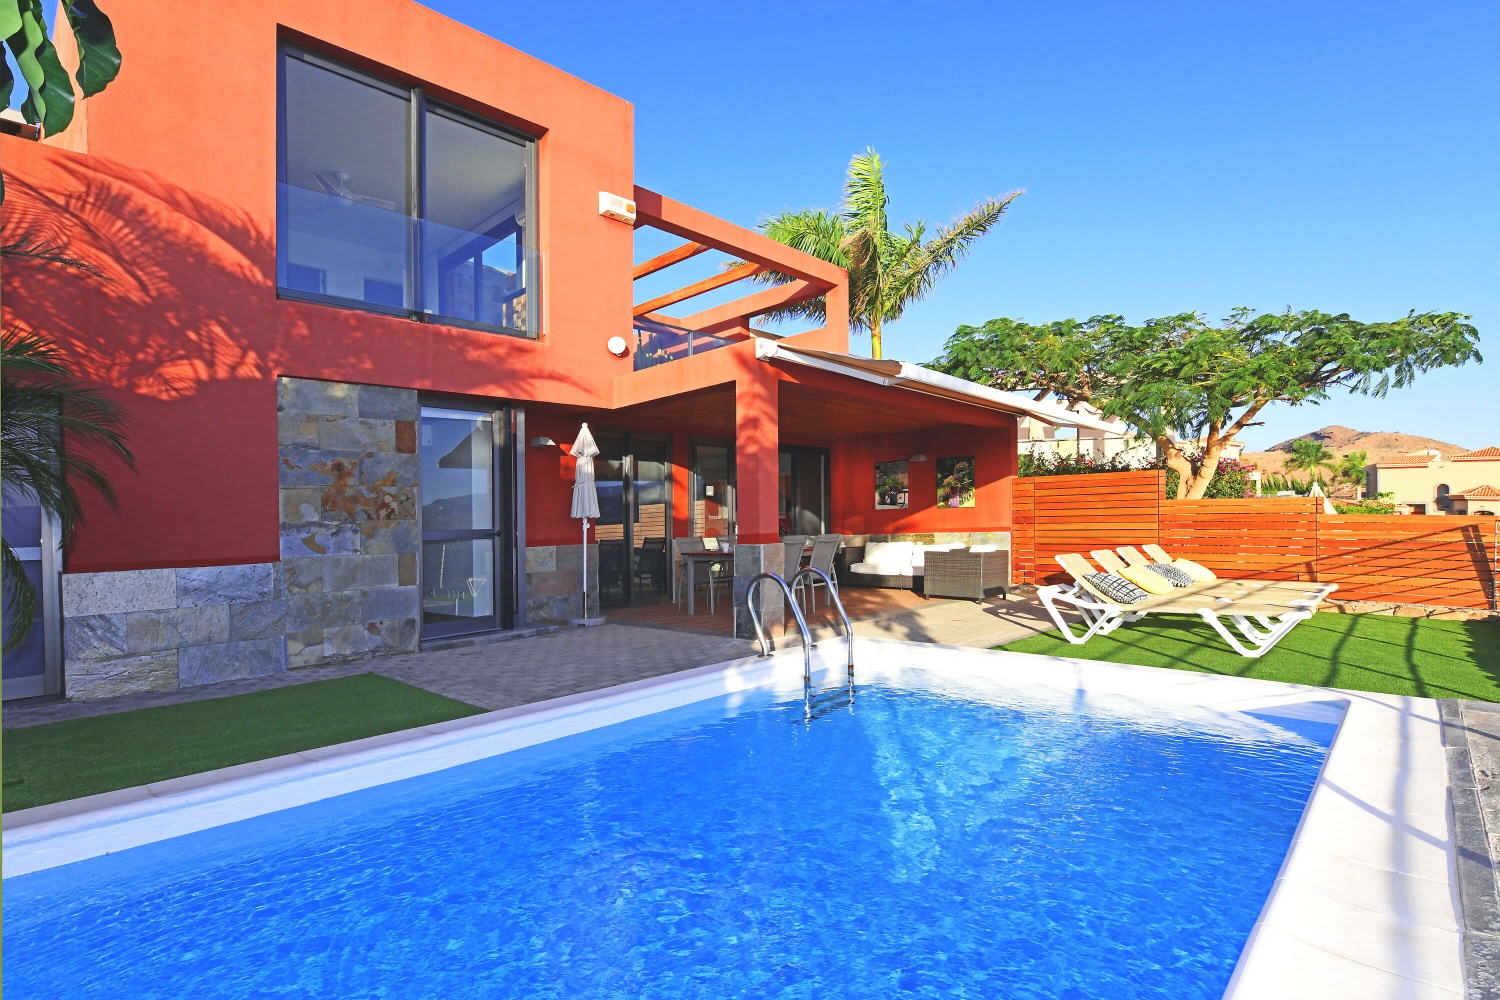 Moderne und stillvolle Villa mit zwei Schlafzimmern, tollem Poolbereich und Terrasse mit Panoramablick